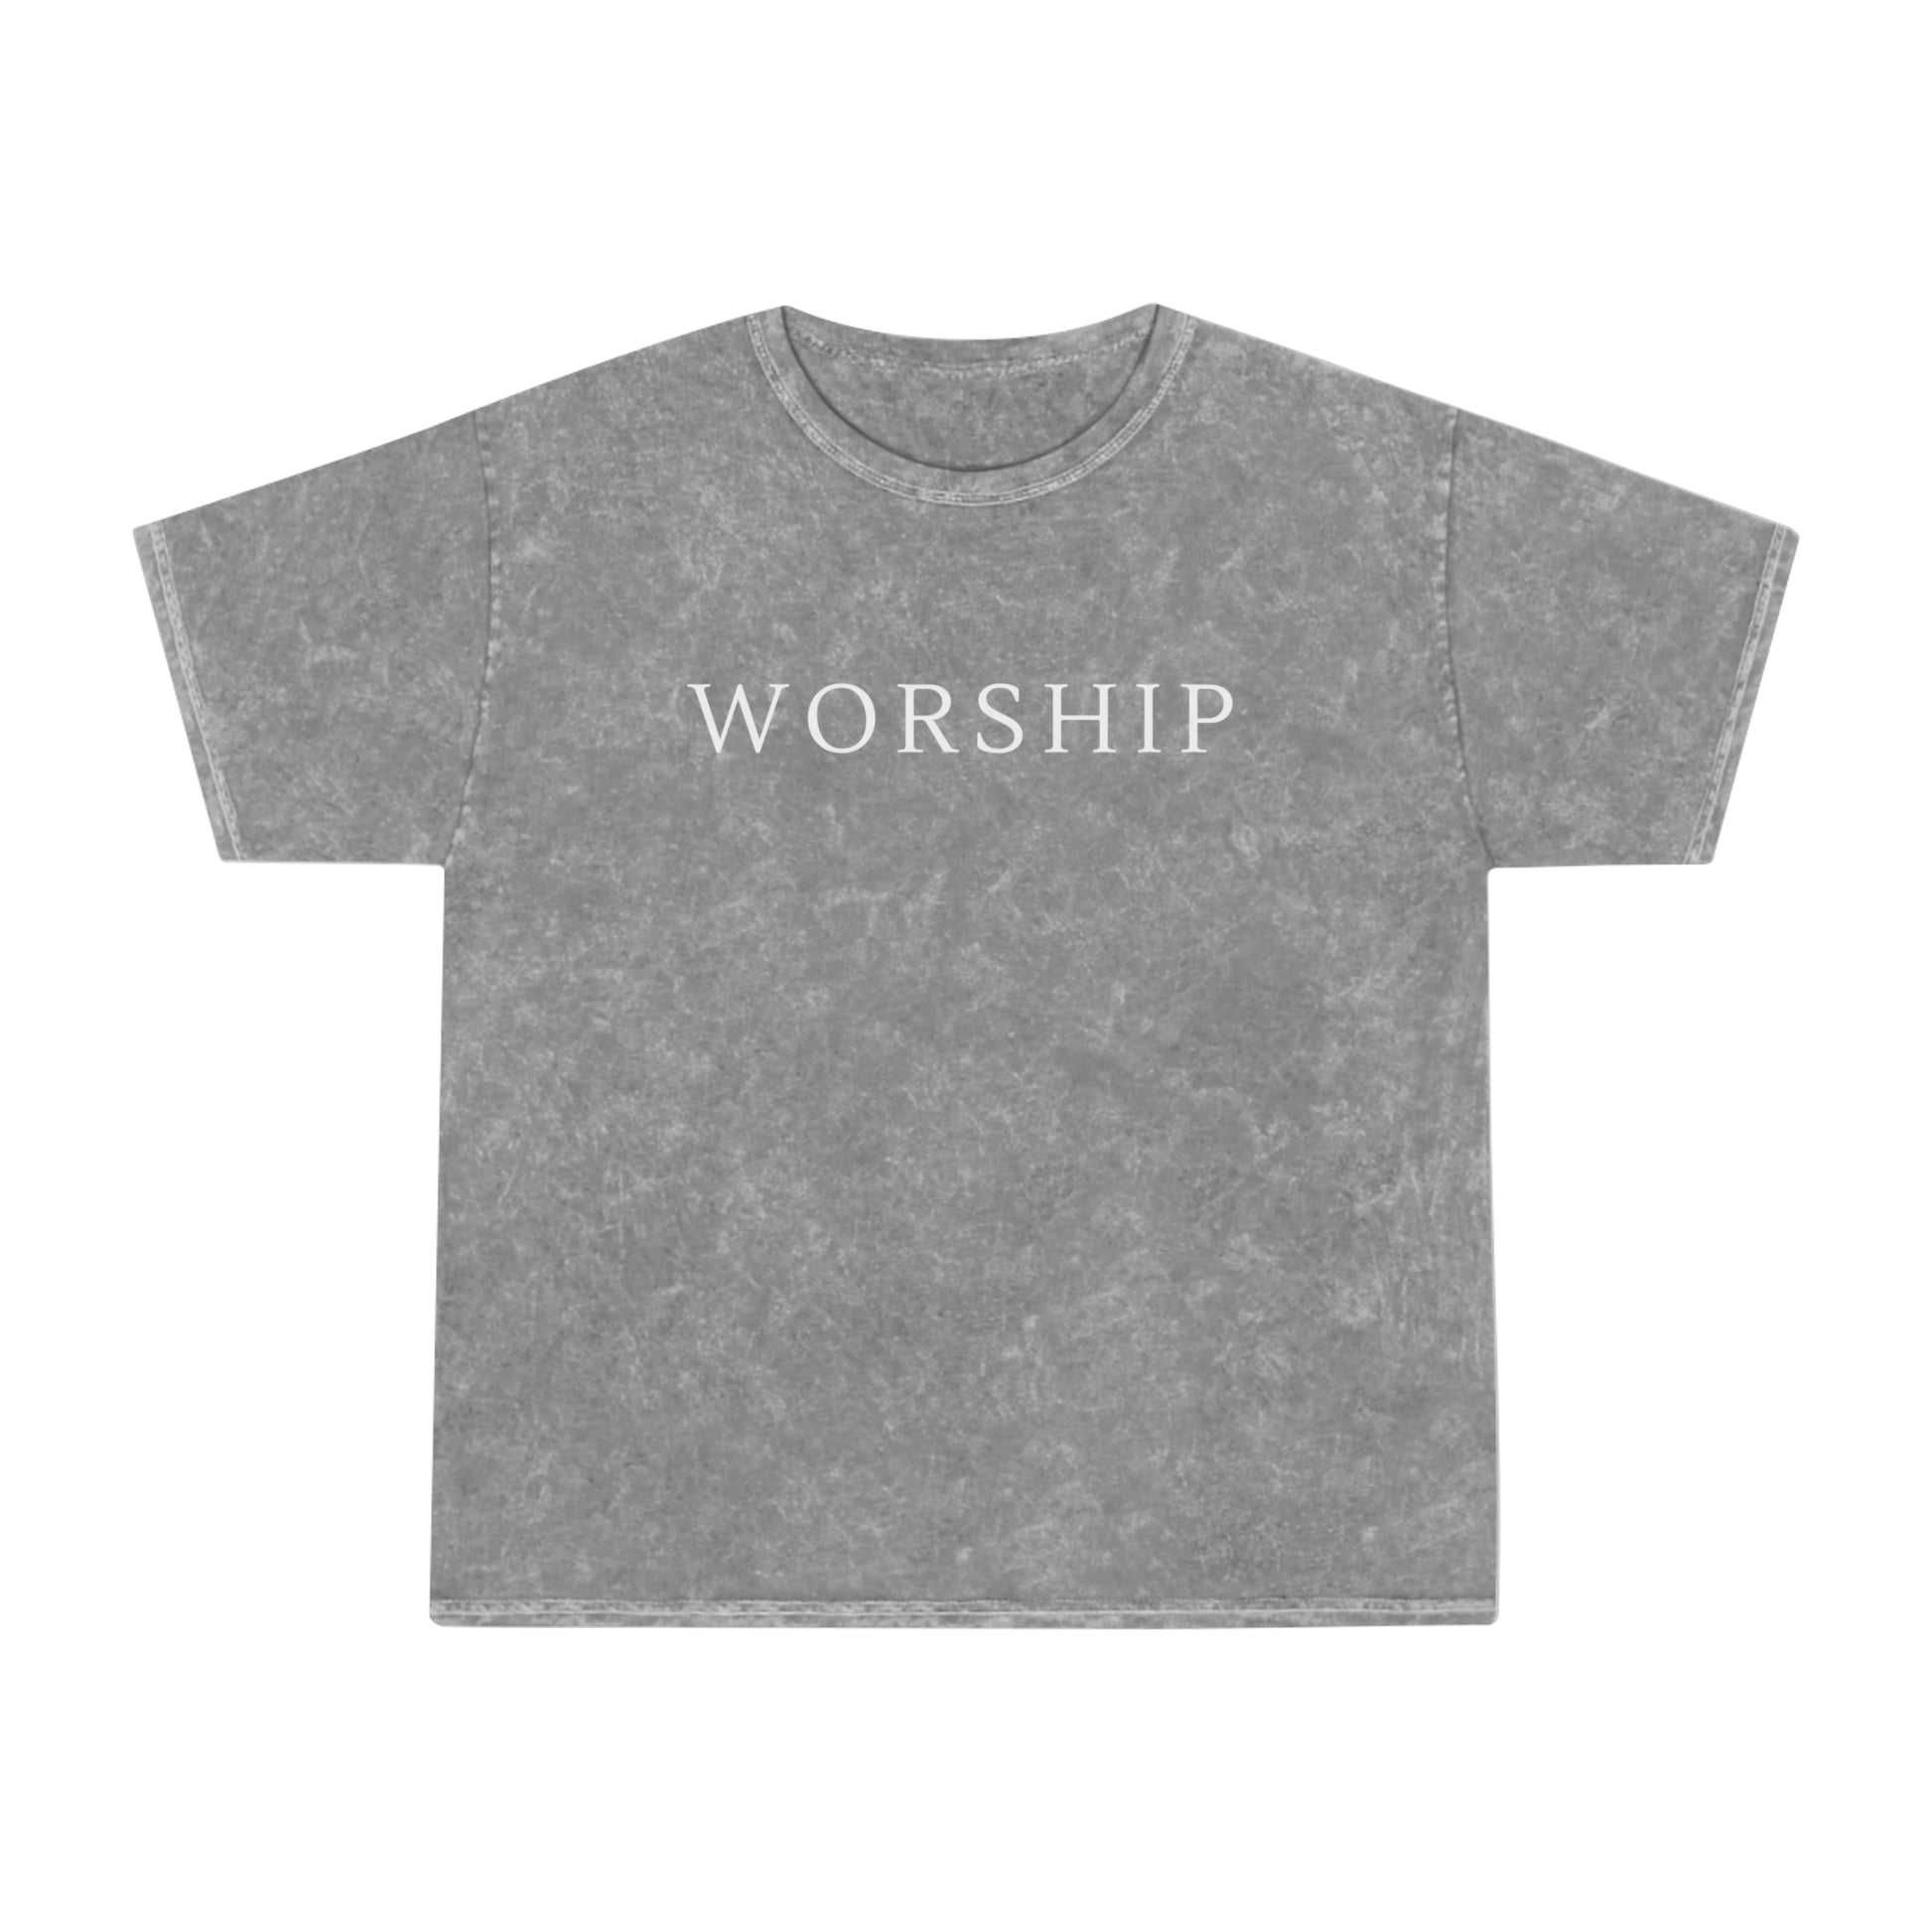 Grey Mineral Wash T Shirt - Worship